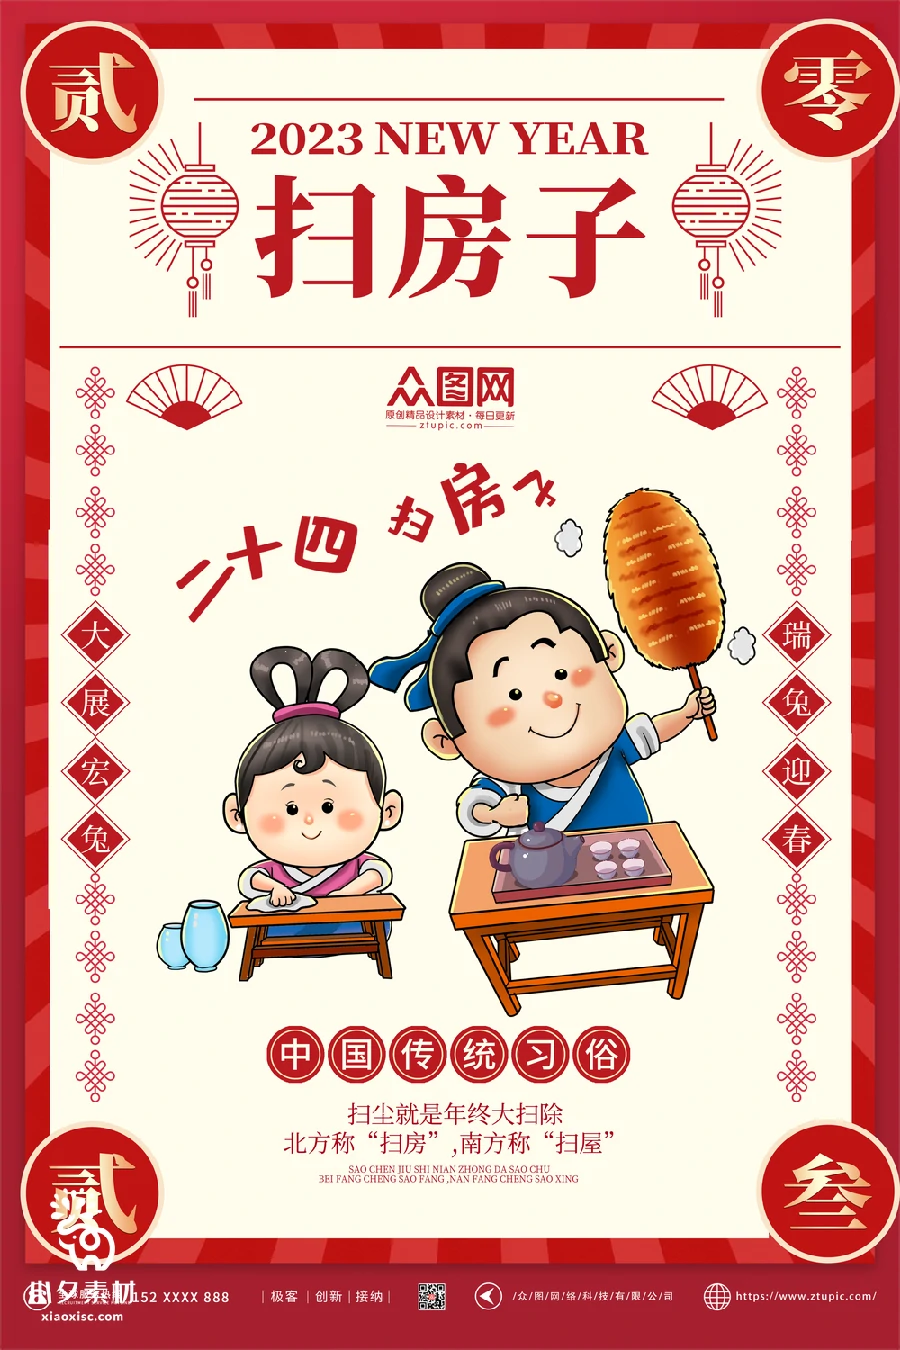 2023兔年新年传统节日年俗过年拜年习俗节气系列海报PSD设计素材【060】